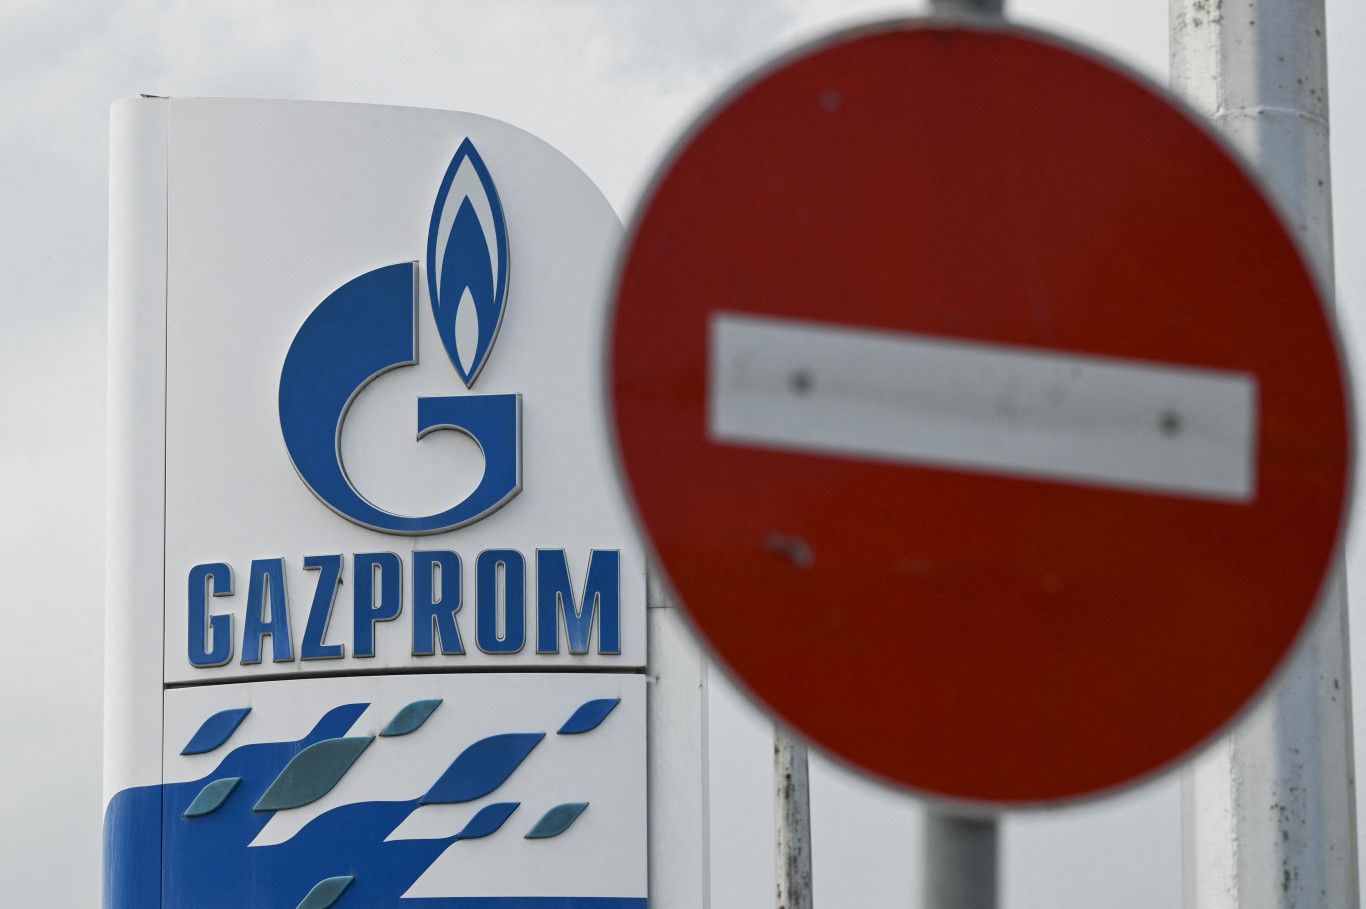 Szankciók, ha nem működnek: 6,86 milliárd dollár veszteség a Gazpromnál